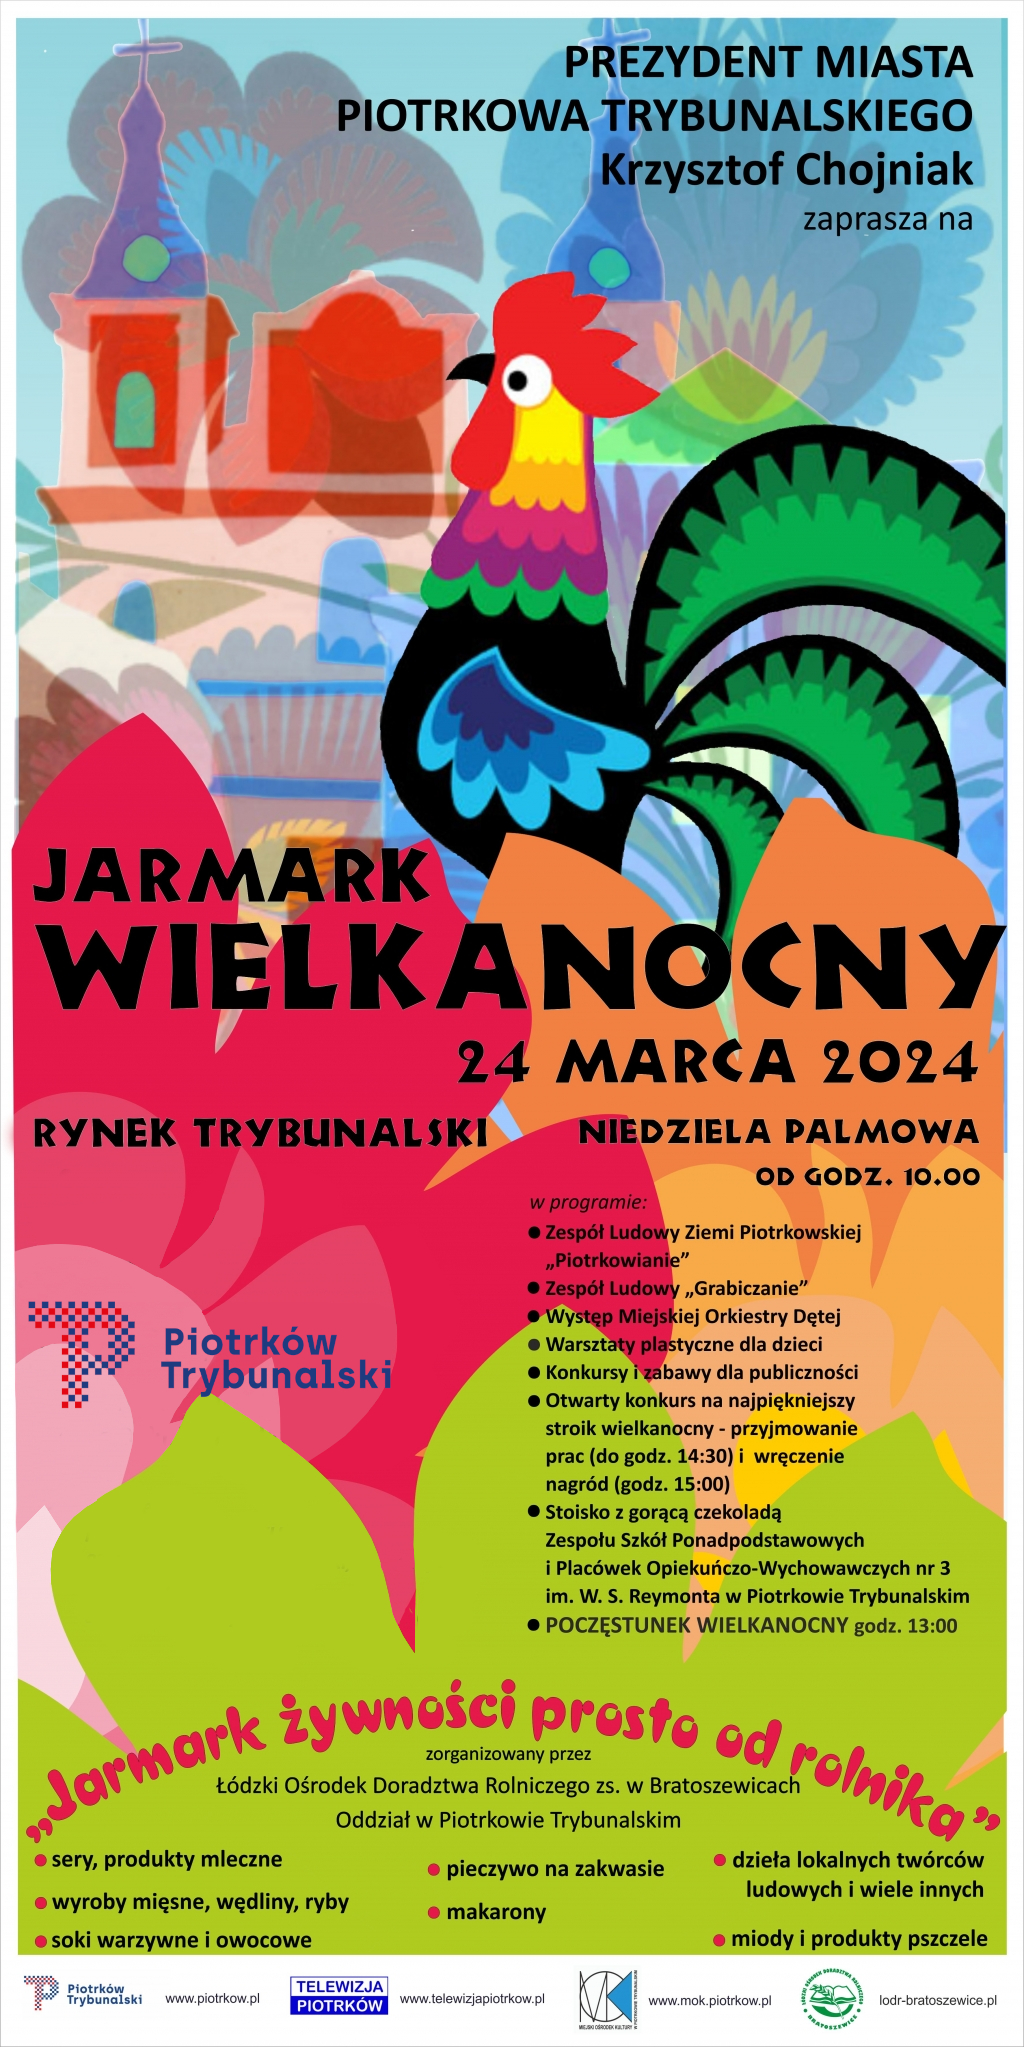 www.piotrkow.pl